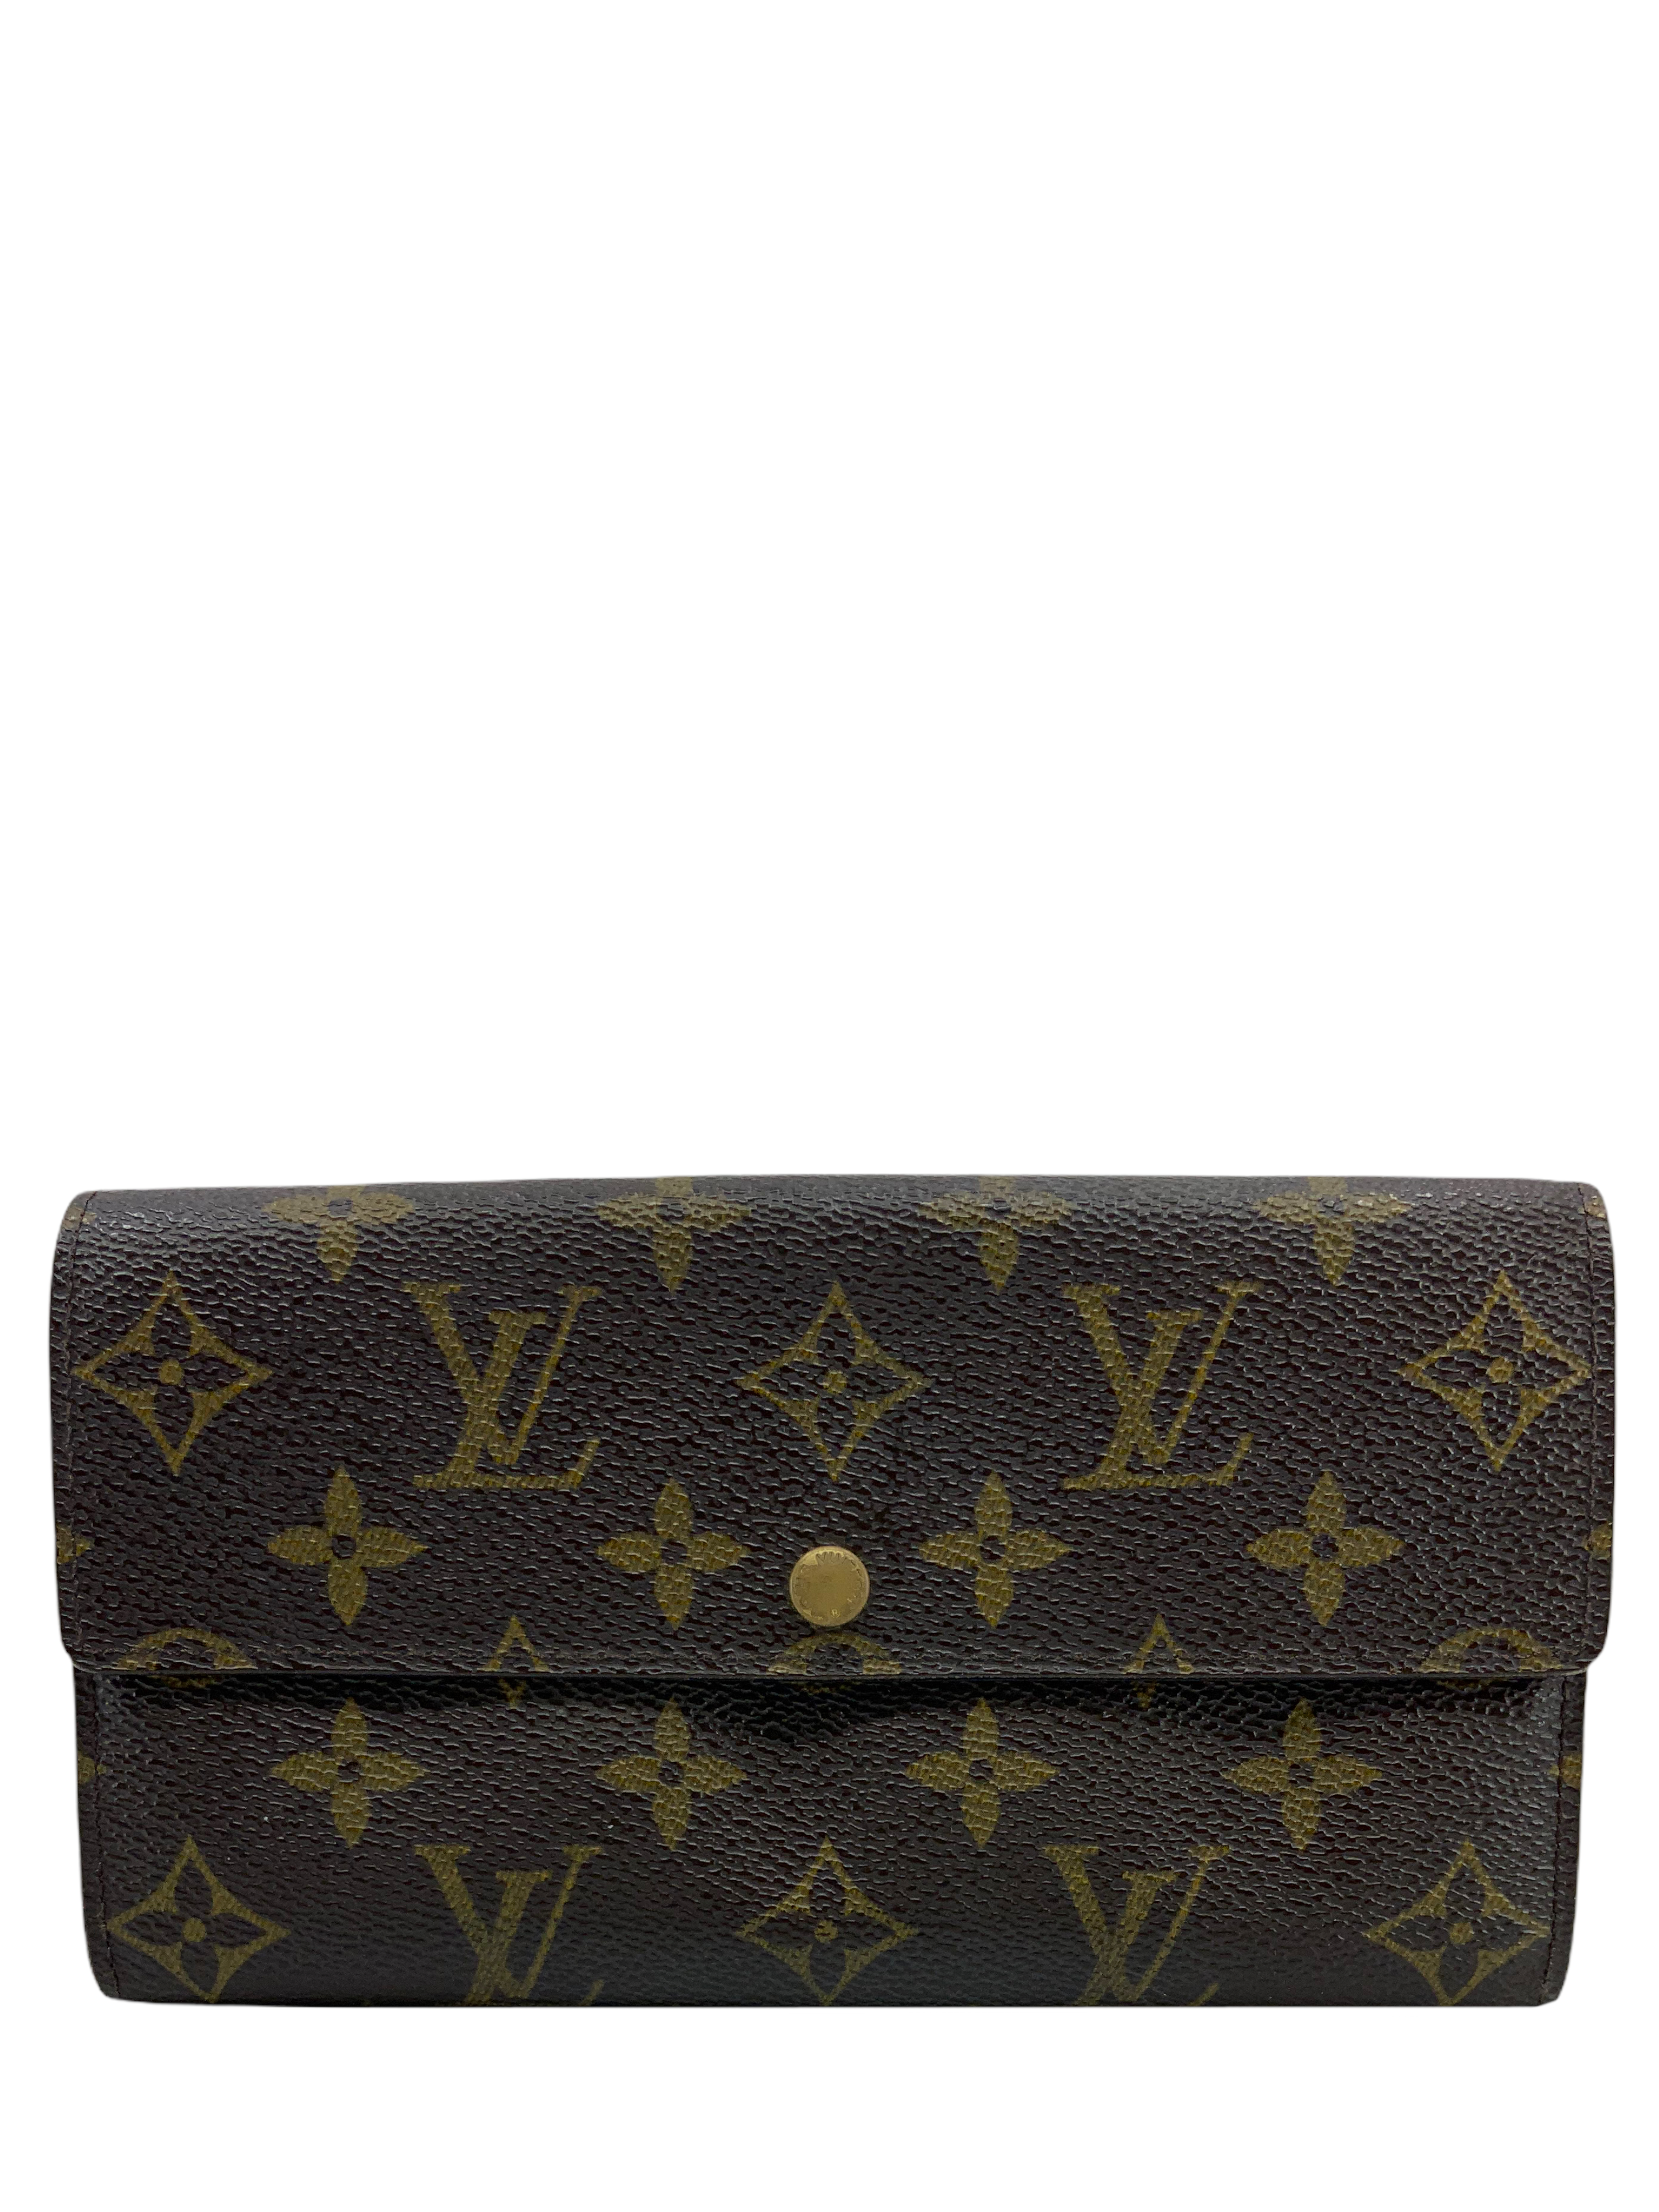 Louis Vuitton Monogram Canvas Long Flap Wallet